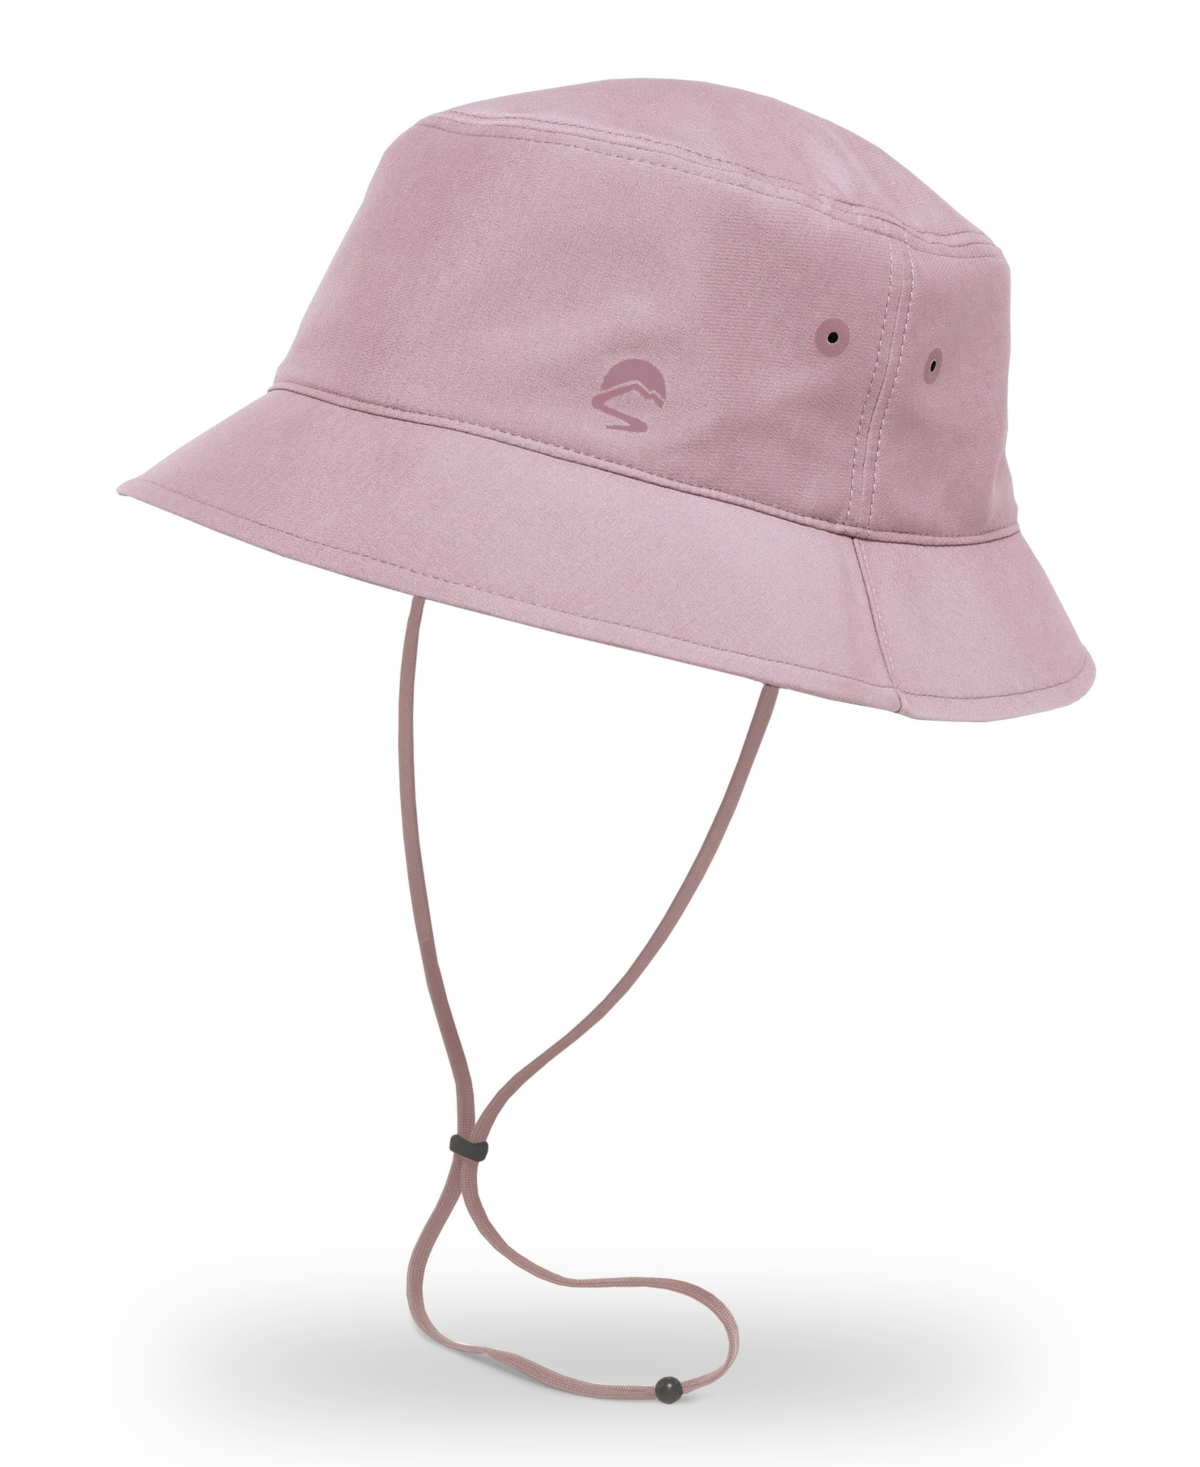 Sunward Bucket Hat - Dusty Rose